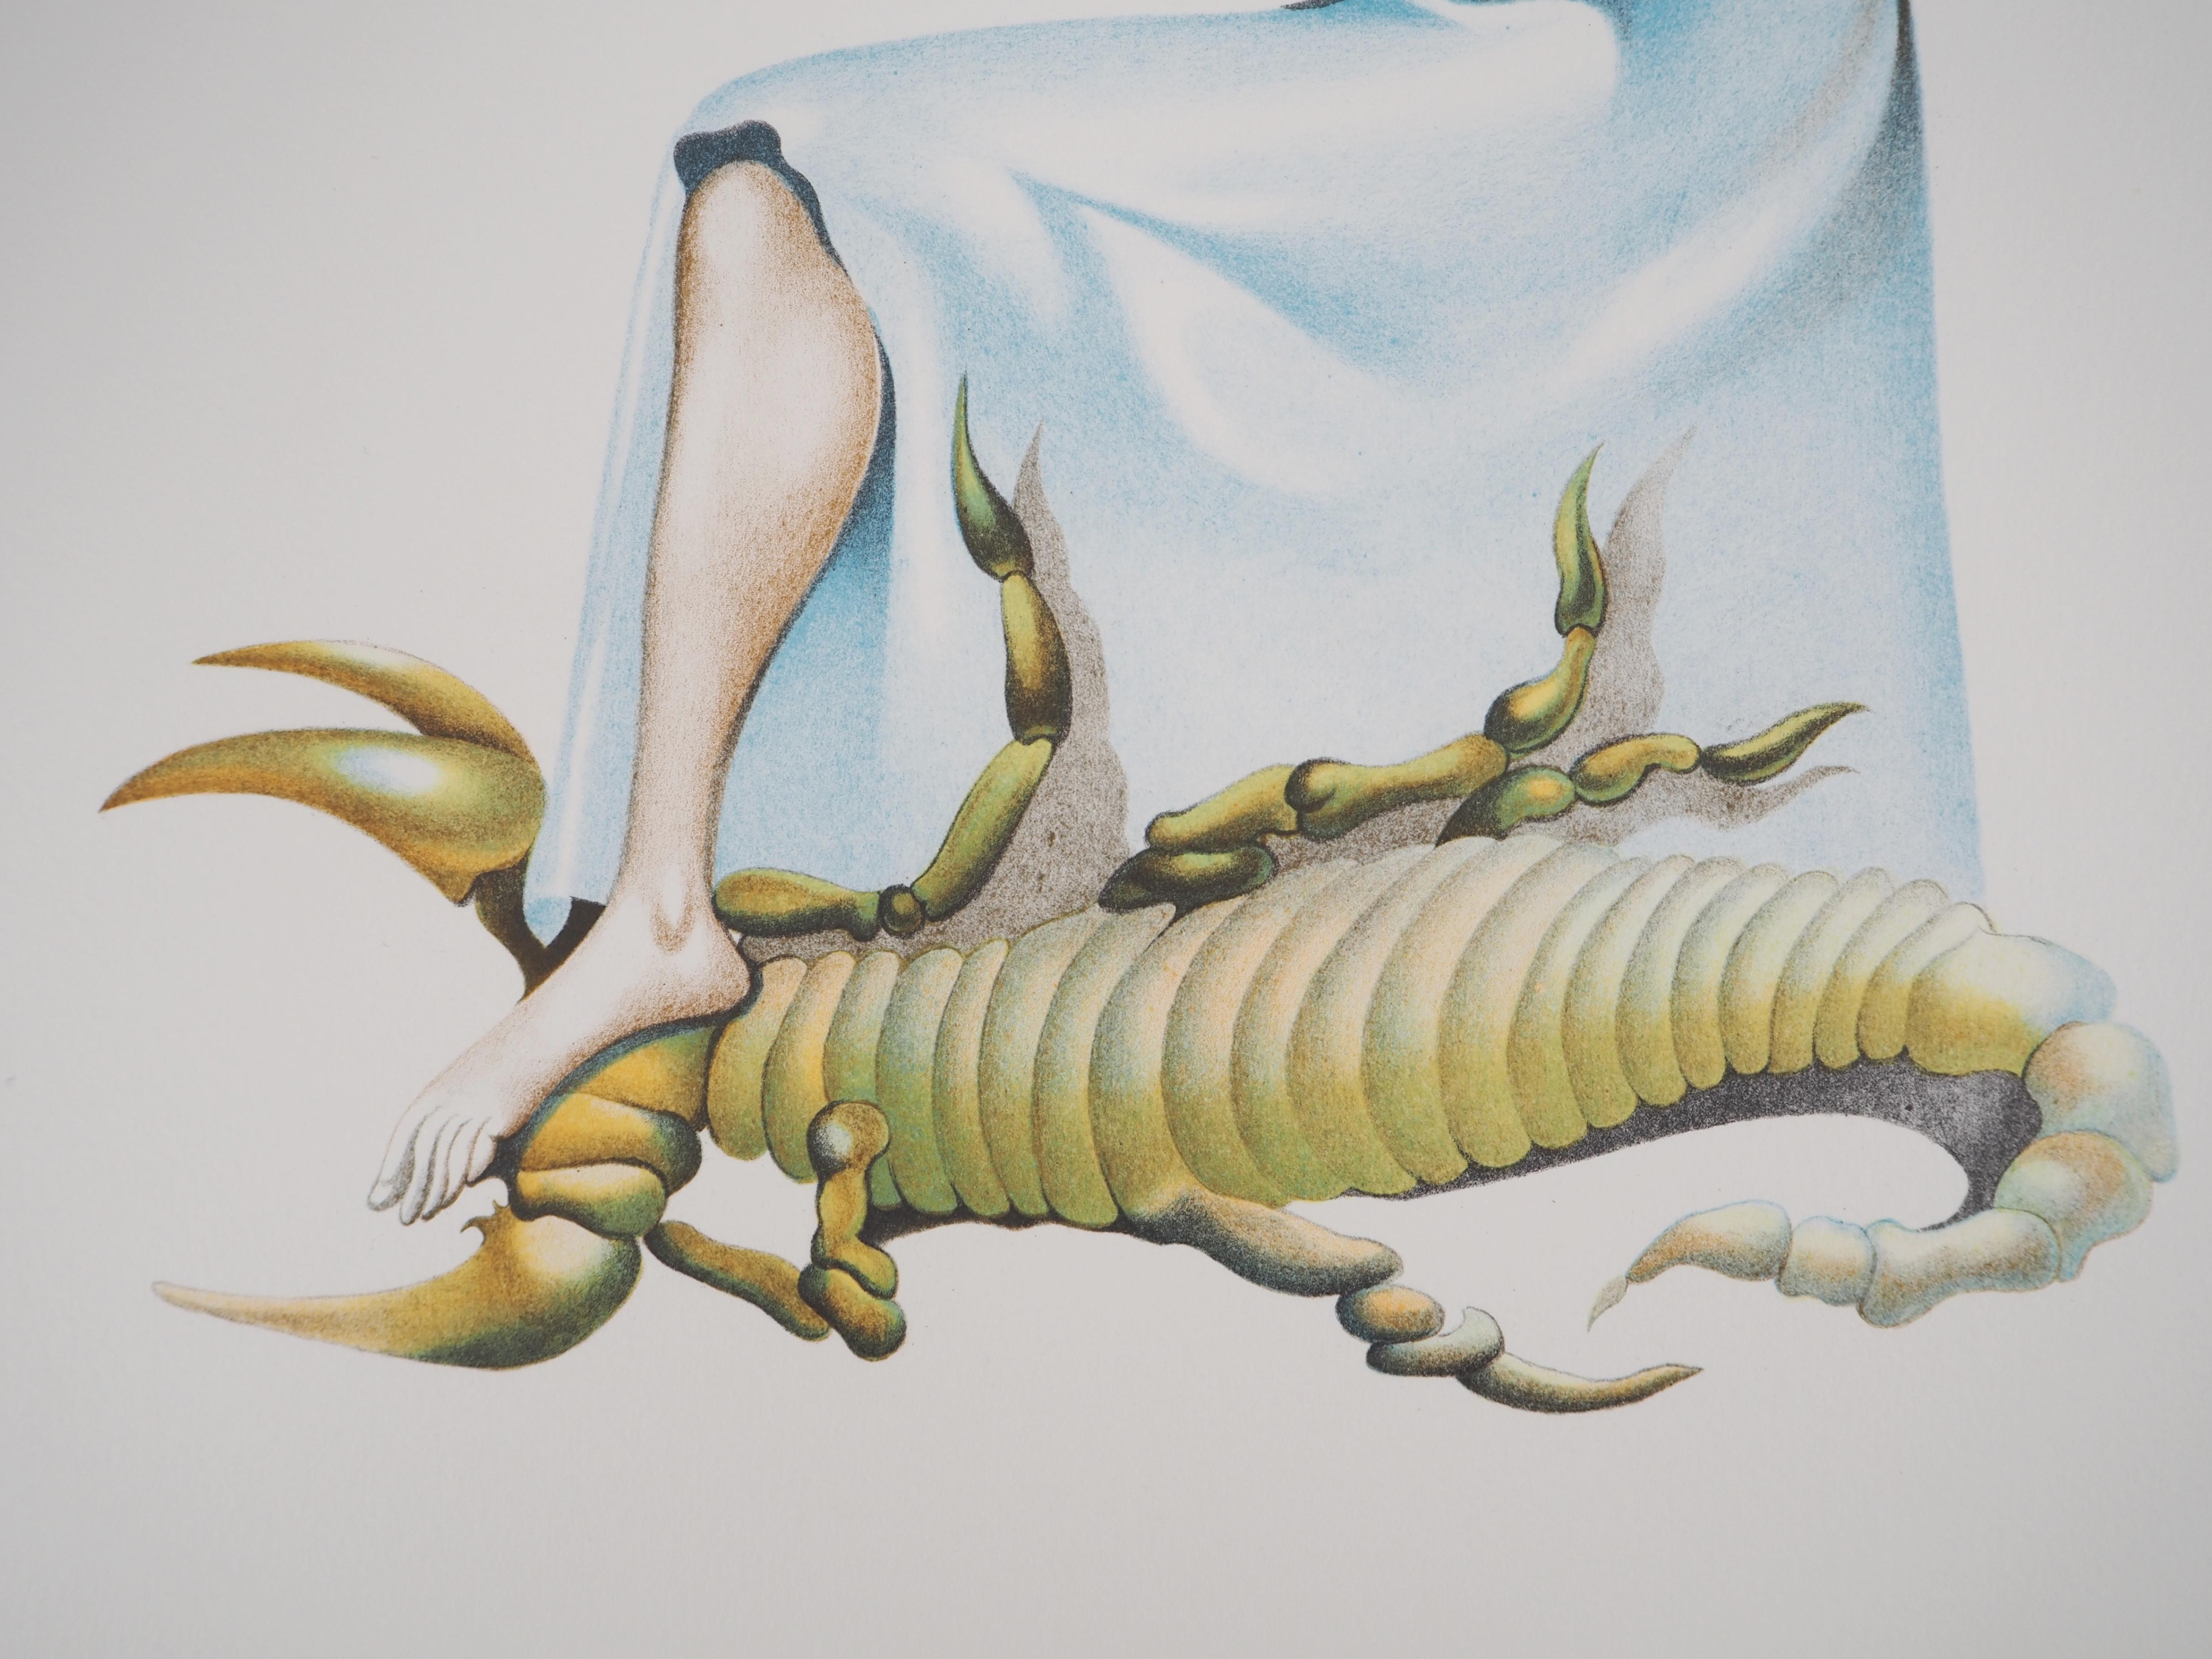 Jules Perahim (1914-2008)
Maternité mystique : enfant avec une pomme, 1974

Lithographie originale
Signé au crayon par l'artiste.
Numéroté / 199
Sur vellum d'Arches 56 x 38 cm (c. 22 x 15 inches)

INFORMATION : Extrait du portfolio 